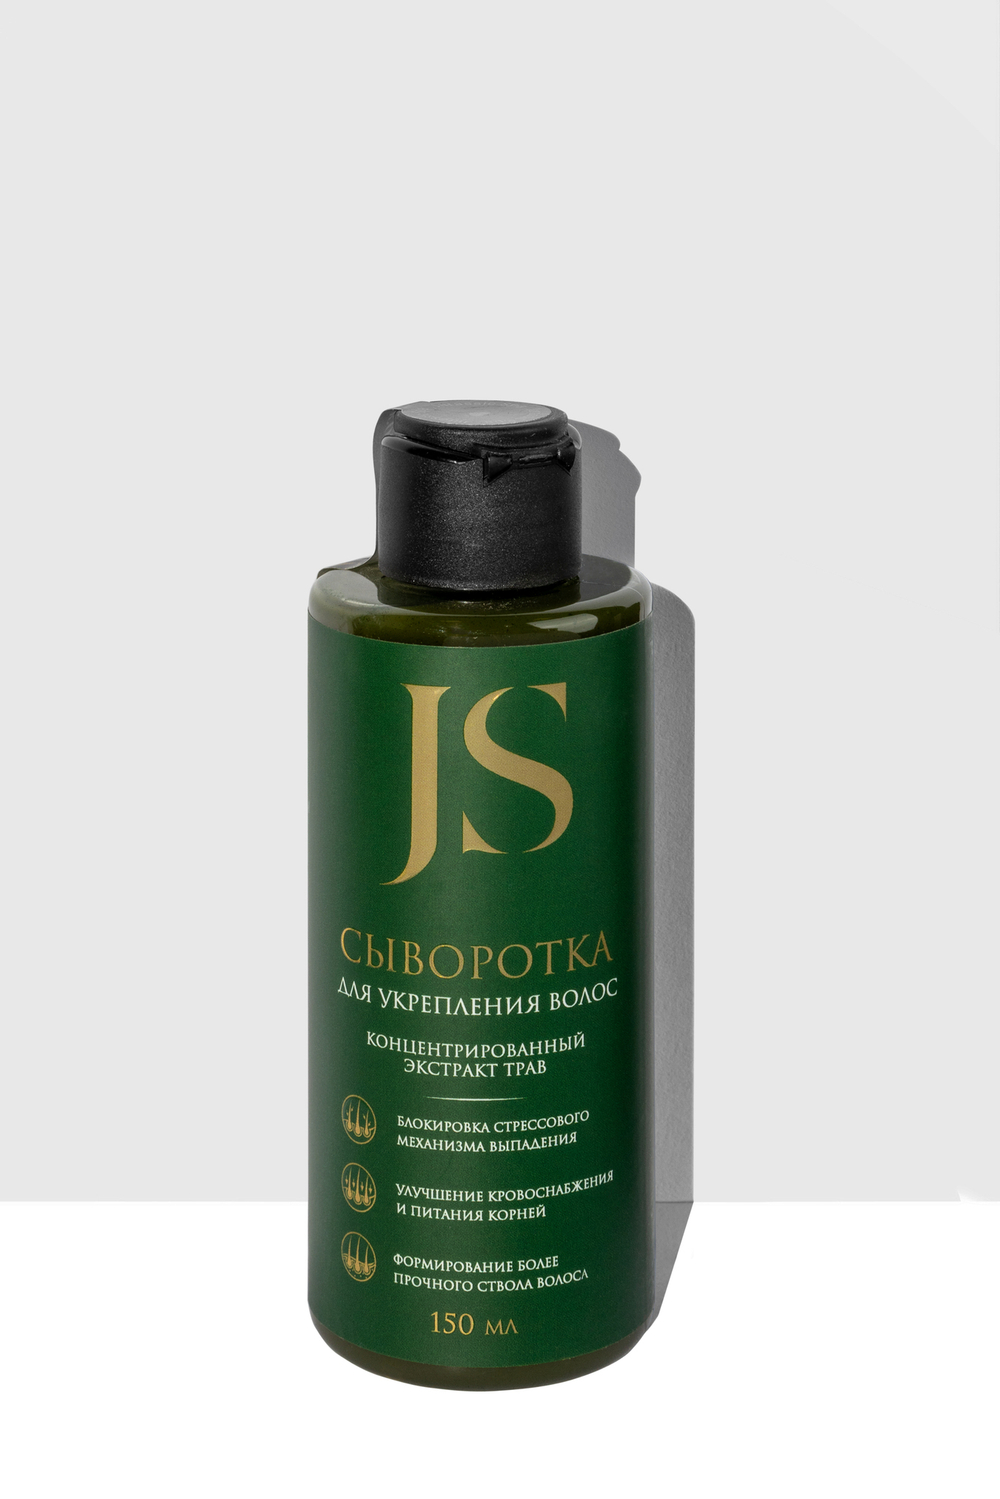 JS Сыворотка для укрепления волос (от выпадения), 150мл